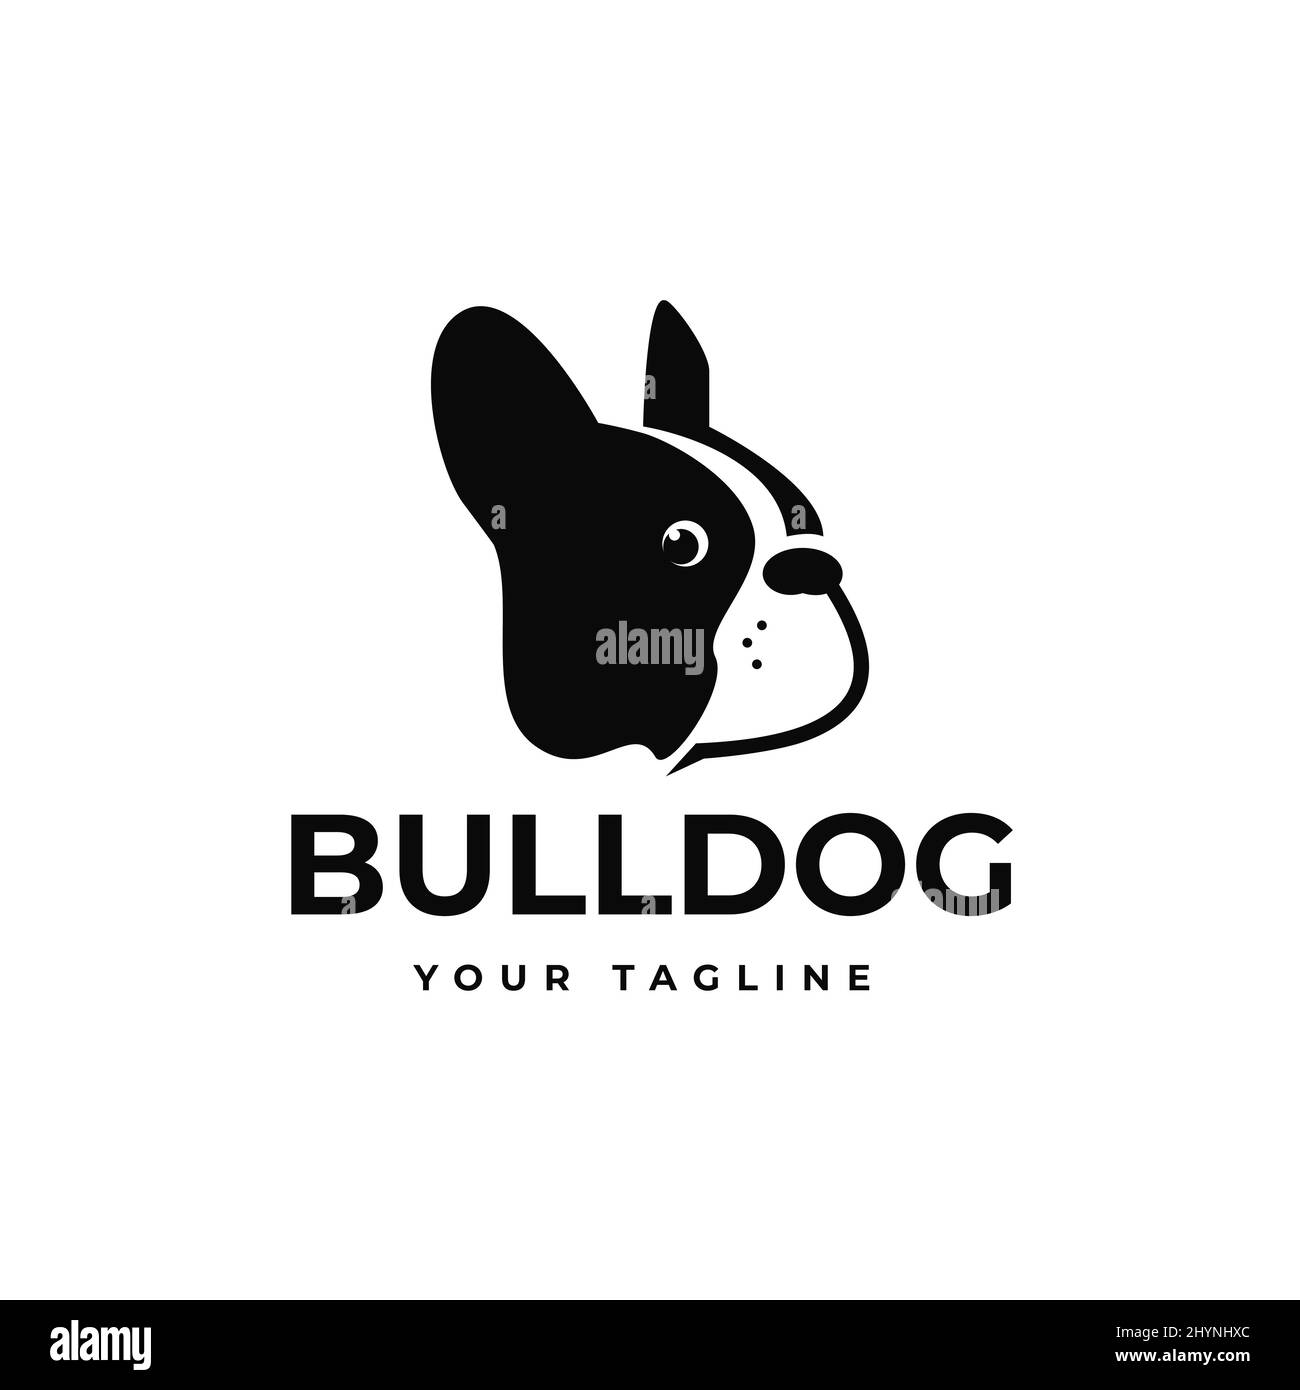 Le logo noir de la tête de chien Bulldog fait face à la vue latérale Illustration de Vecteur